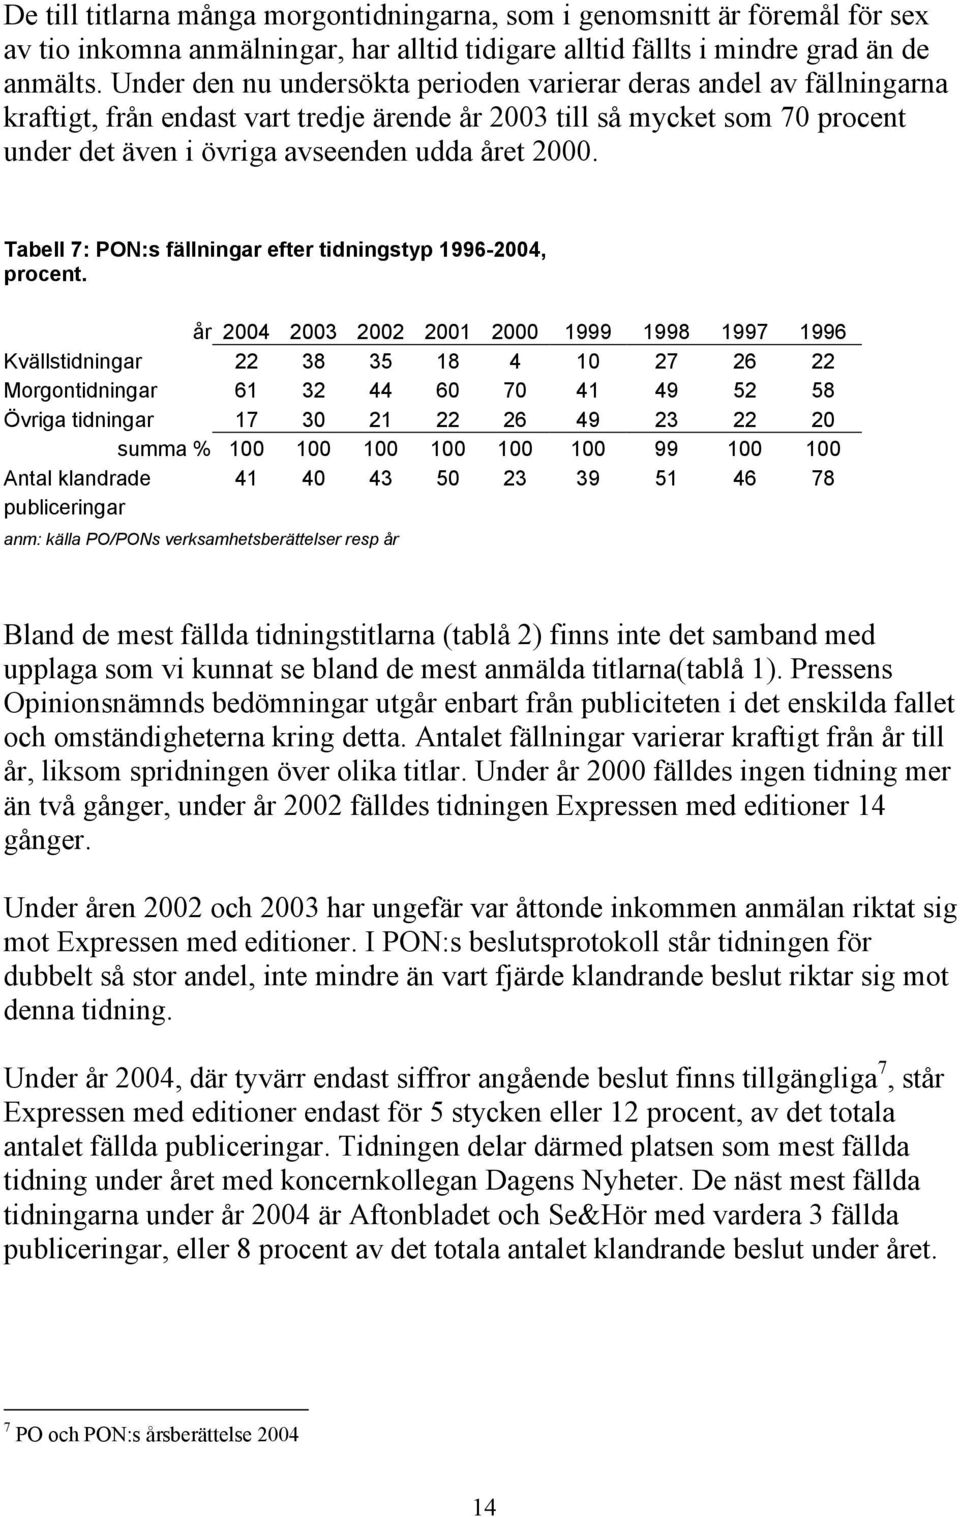 Tabell 7: PON:s fällningar efter tidningstyp 1996-2004, procent.